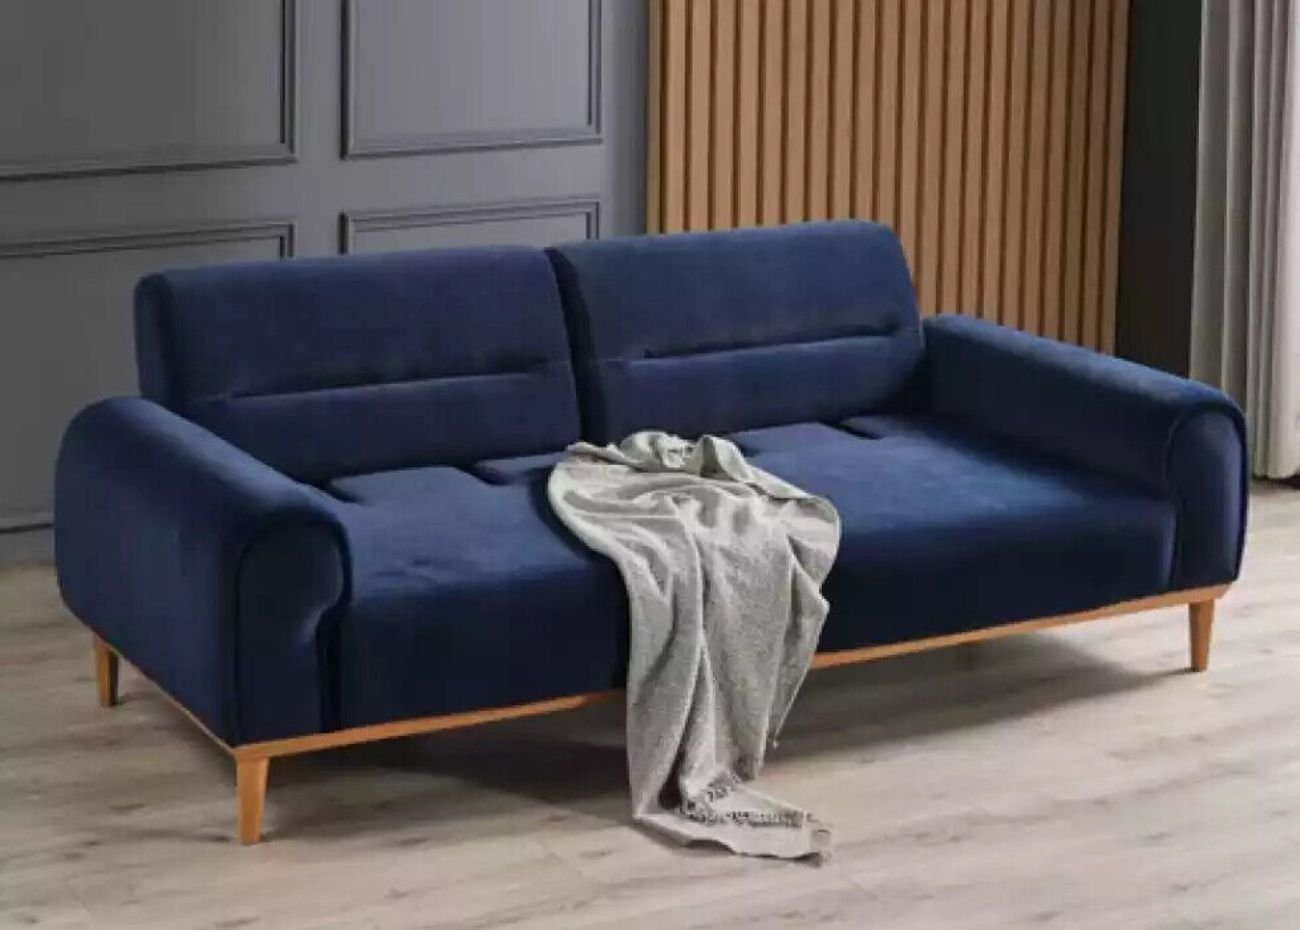 JVmoebel 3-Sitzer Dreisitzer Blau Couch Polster Design Sofa 3 Sitzer Sofas Zimmer, 1 Teile, Made in Italy